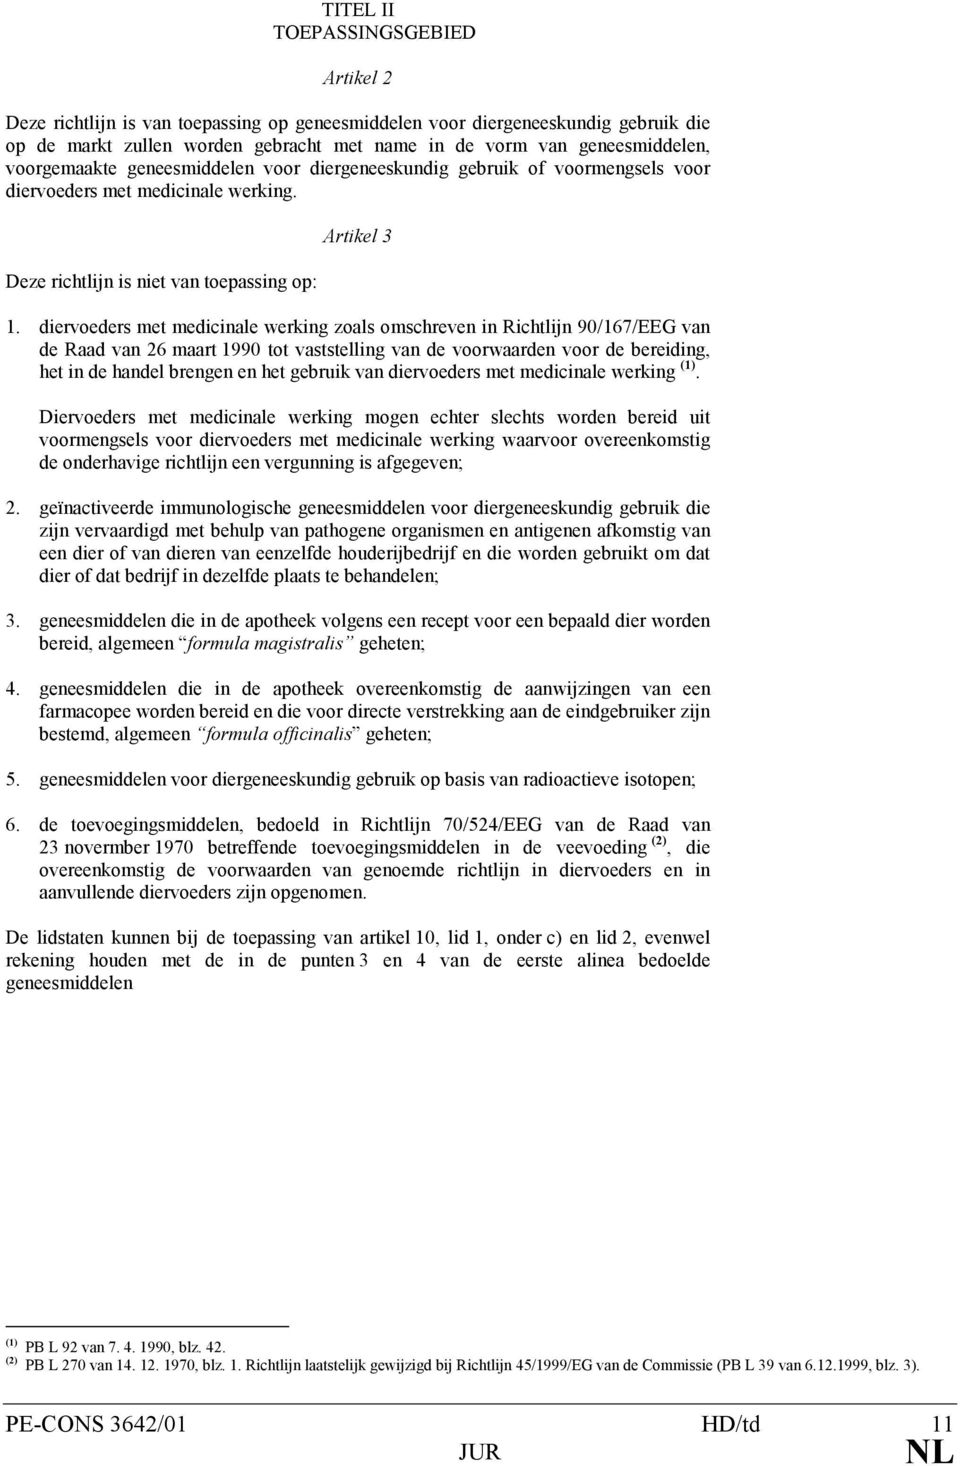 diervoeders met medicinale werking zoals omschreven in Richtlijn 90/167/EEG van de Raad van 26 maart 1990 tot vaststelling van de voorwaarden voor de bereiding, het in de handel brengen en het